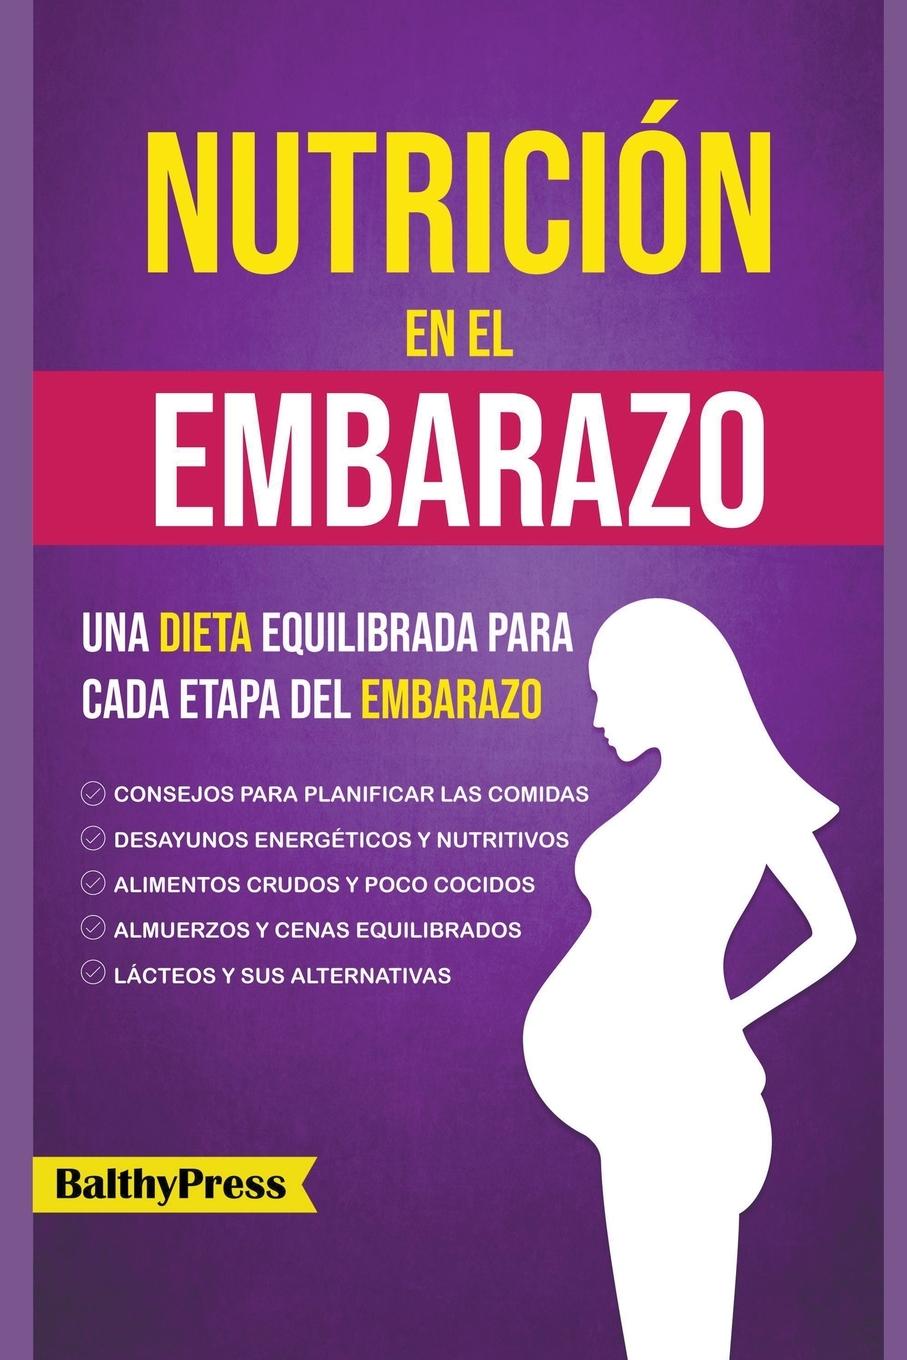 Carte Nutricion en el Embarazo 